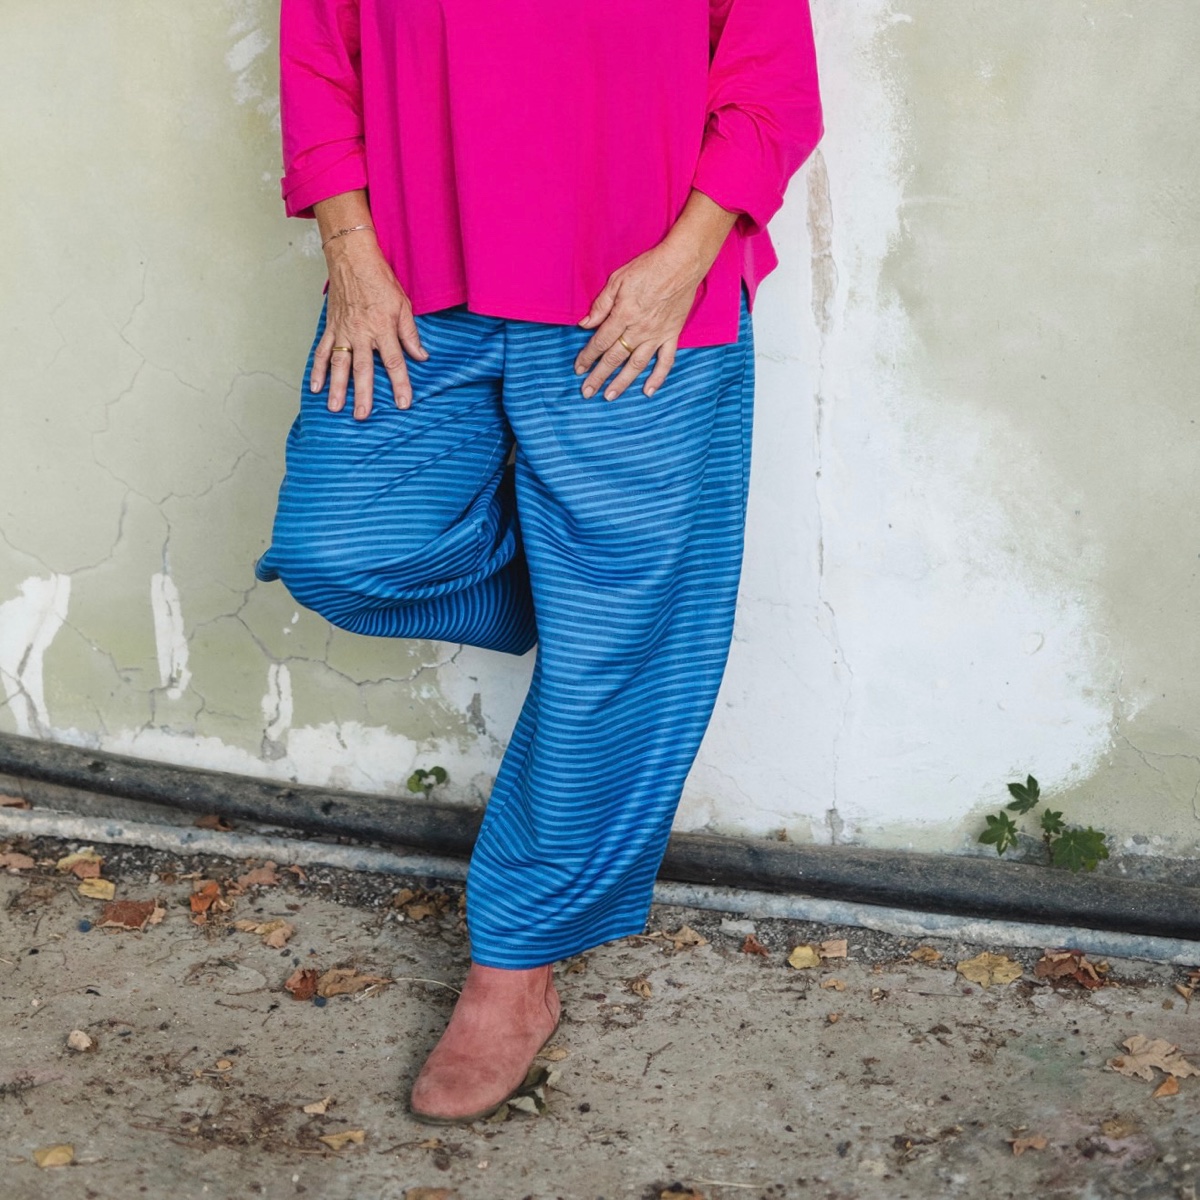 מכנסיים מדגם מיכאלה עם פסים צרים בצבע בורדו על רקע כחול - אחרון במלאי במידה 16